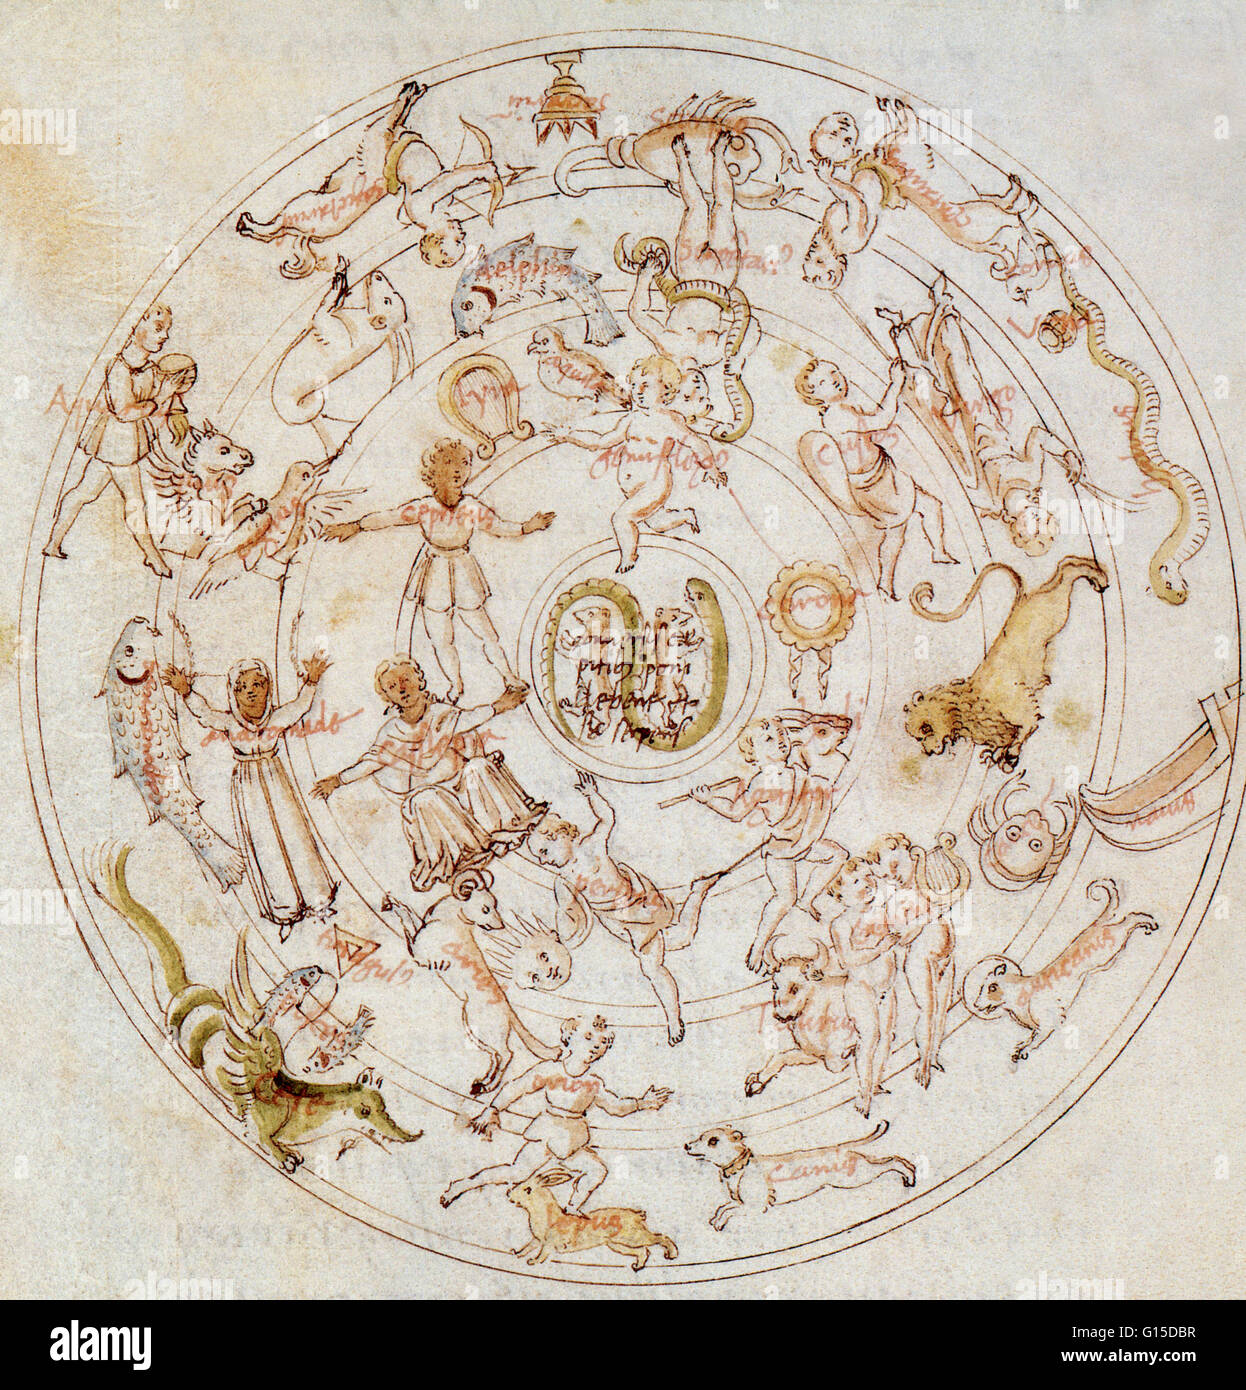 Karte von den Himmeln des griechischen Dichters Aratos (315-240 v. Chr.).  Kopieren Sie 15. Jahrhundert. Stockfoto